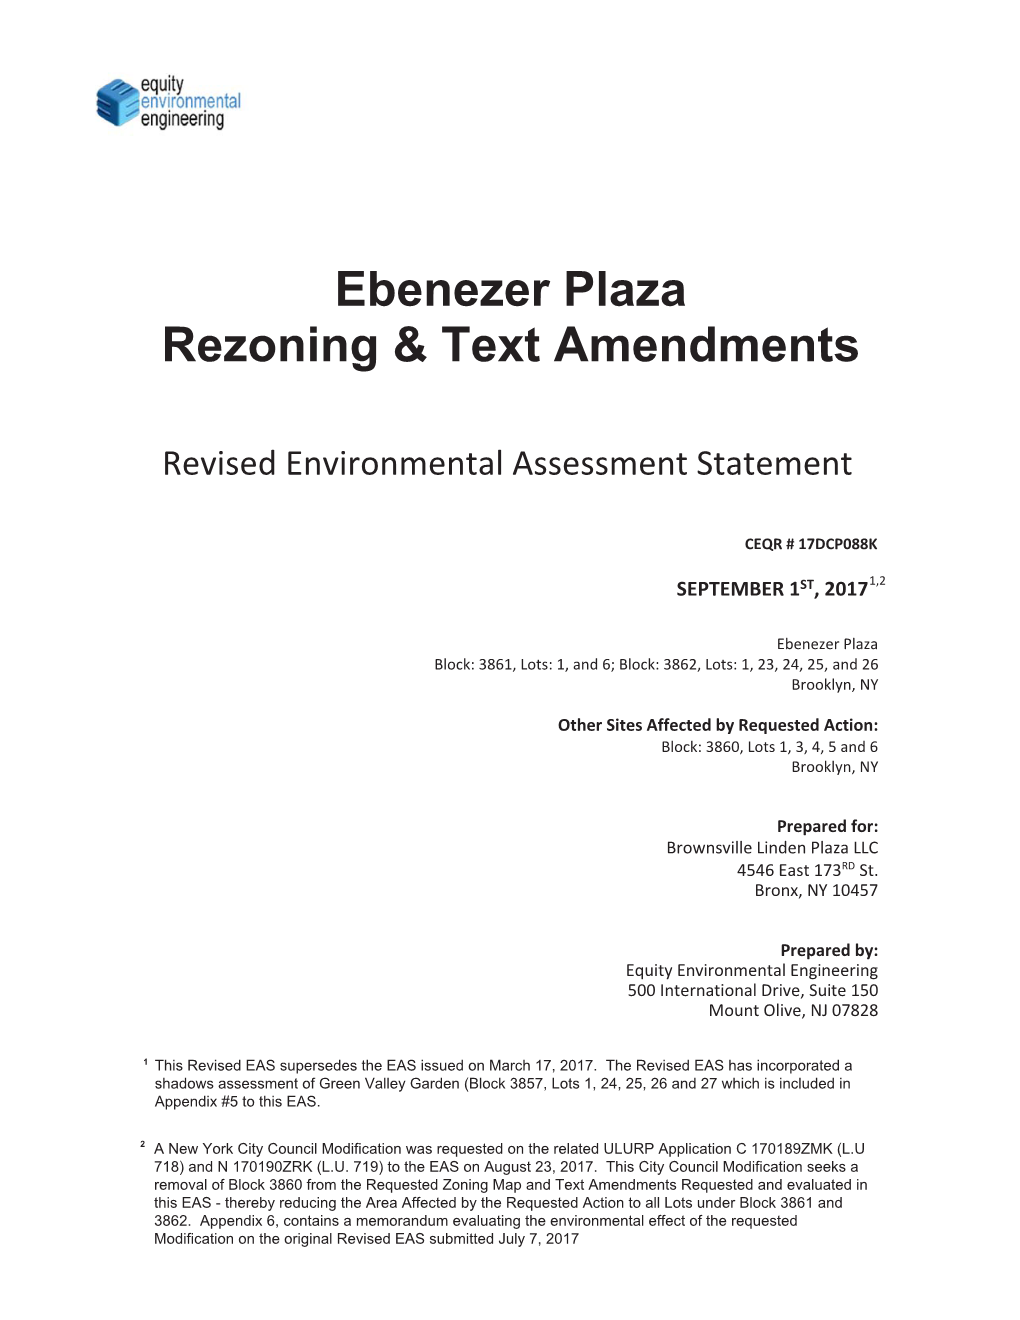 Ebenezer Plaza Rezoning & Text Amendments